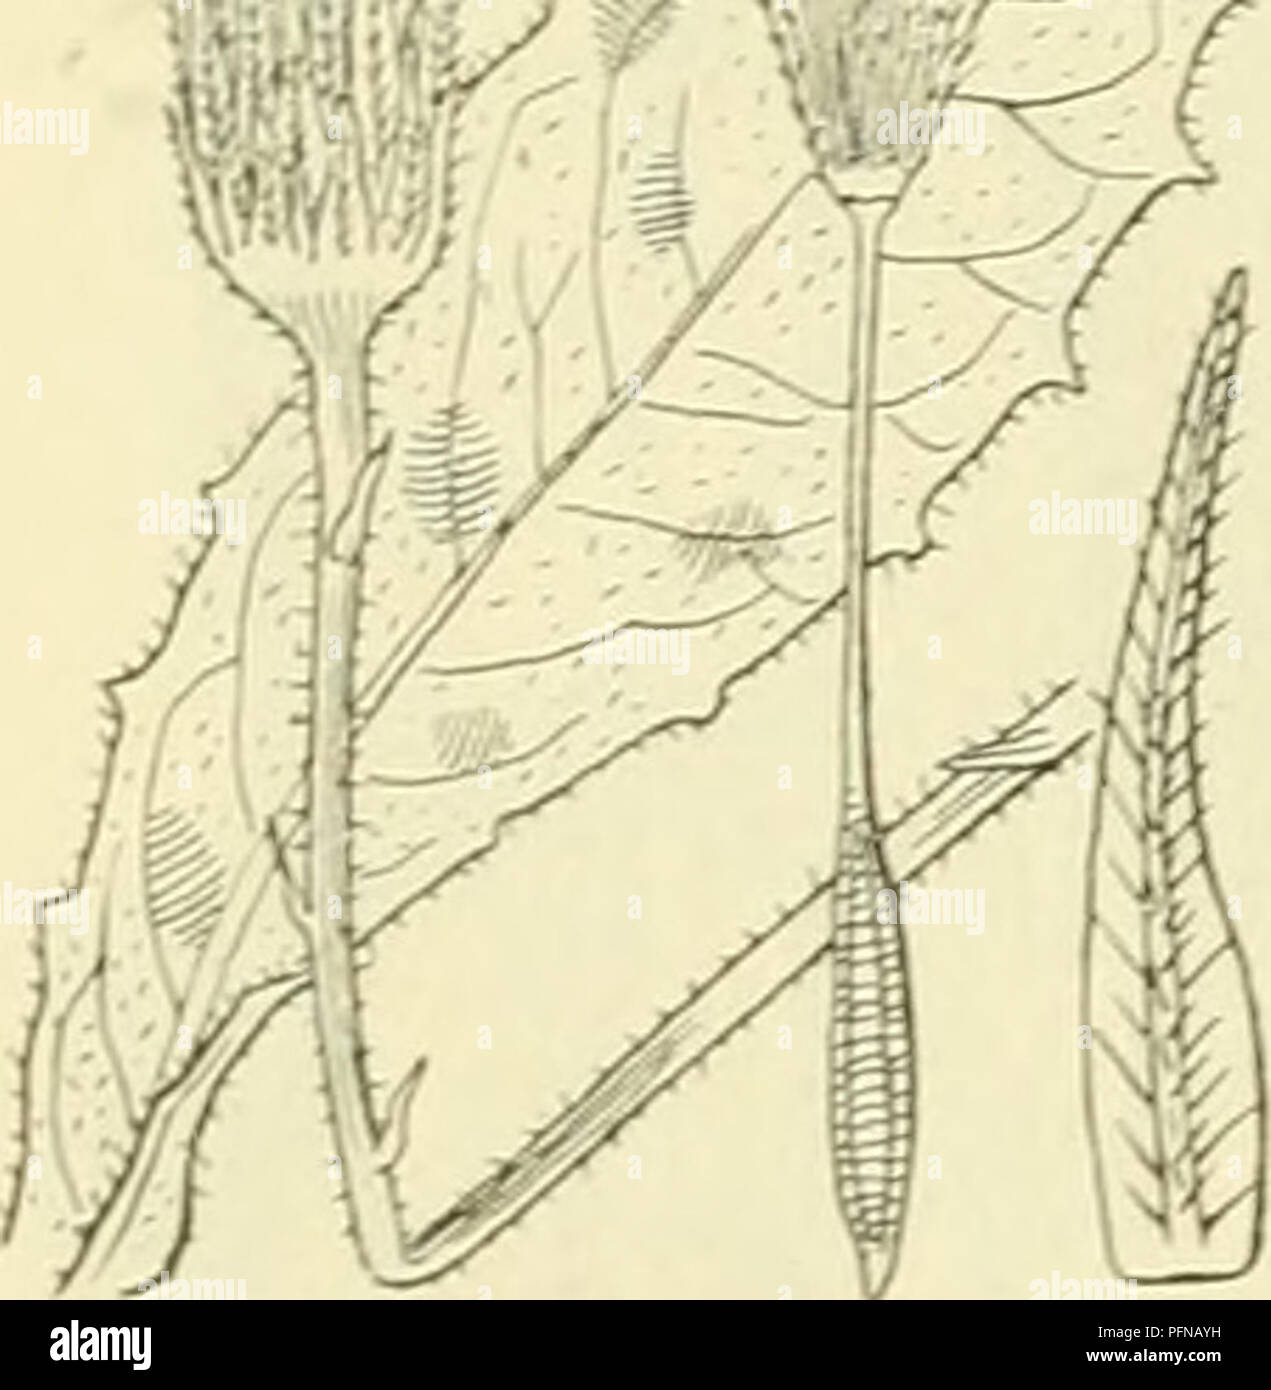 . De flora van Nederland. Plants. Hypochoeris radicata Fig. 572. De hoofdjes zijn vrij groot en staan op nauwelijks verdikte stelen. De omwindselbladen zijn lancetvormig, donkergroen, op de gekielde nerven dikwijls borstelig, aanliggend, alle zijn korter dan de bloemen. De bloembodem is bezet met lintvormige strooschubben met gelen top. De bloemkronen zijn donker goudgeel, de buitenste van buiten donker blauwgrijs, 5-tandig. De vruchten zijn alle langge- snaveld, gegroefd, borstelig (fig. 572). 1,5-6 dM. 4- Juli—September. De plant onderscheidt zich van de er op gelijkende Leontodon autumnalis Stock Photo